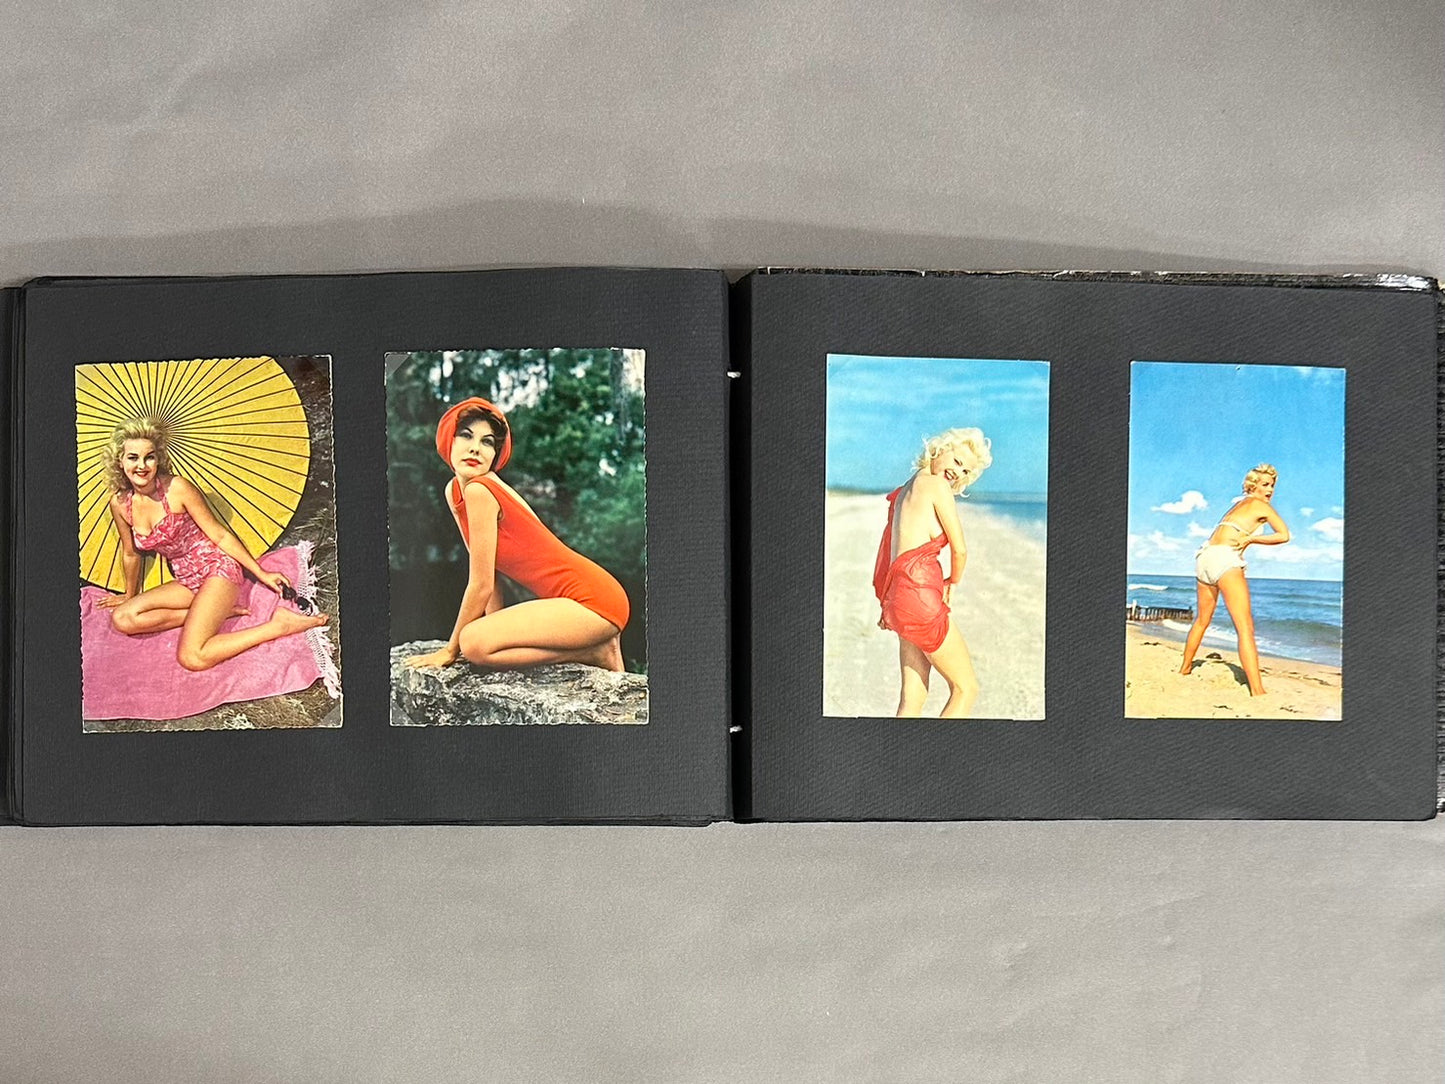 シガレットカード、ピンナップ貼り込み帖 林由紀子さんのコレクション　172枚